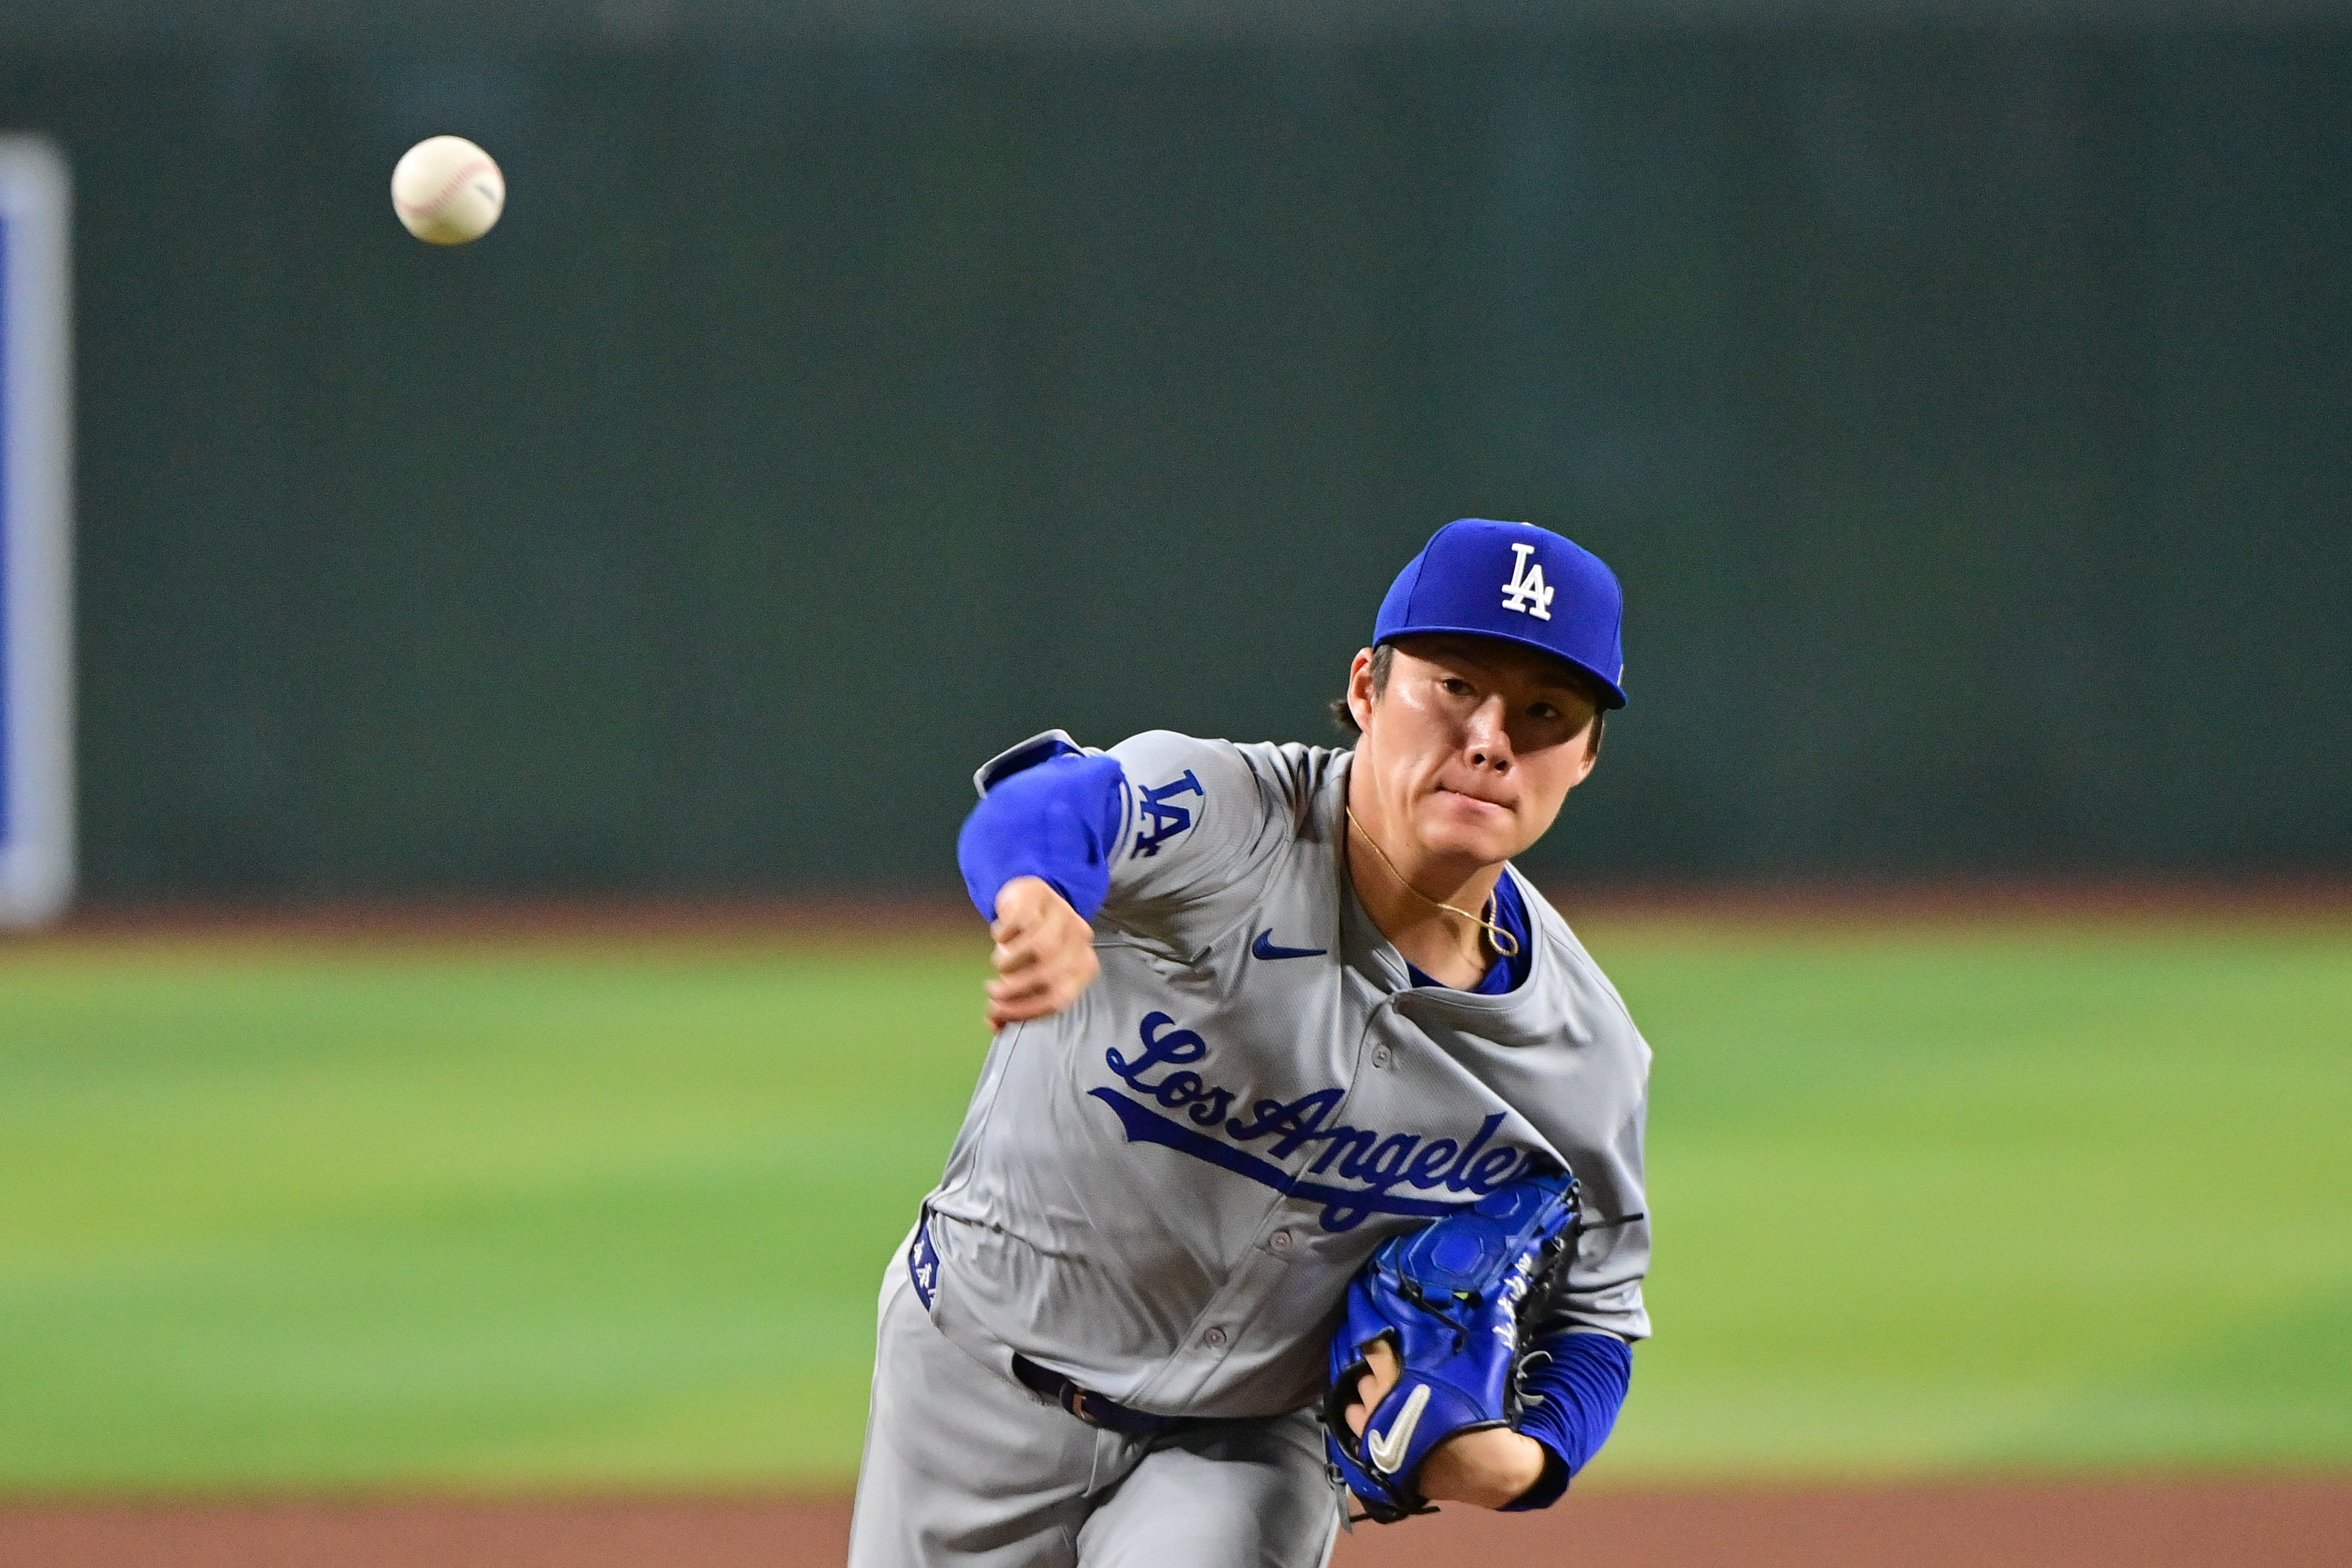 Yoshinobu Yamamoto will pitch for the Dodgers this series